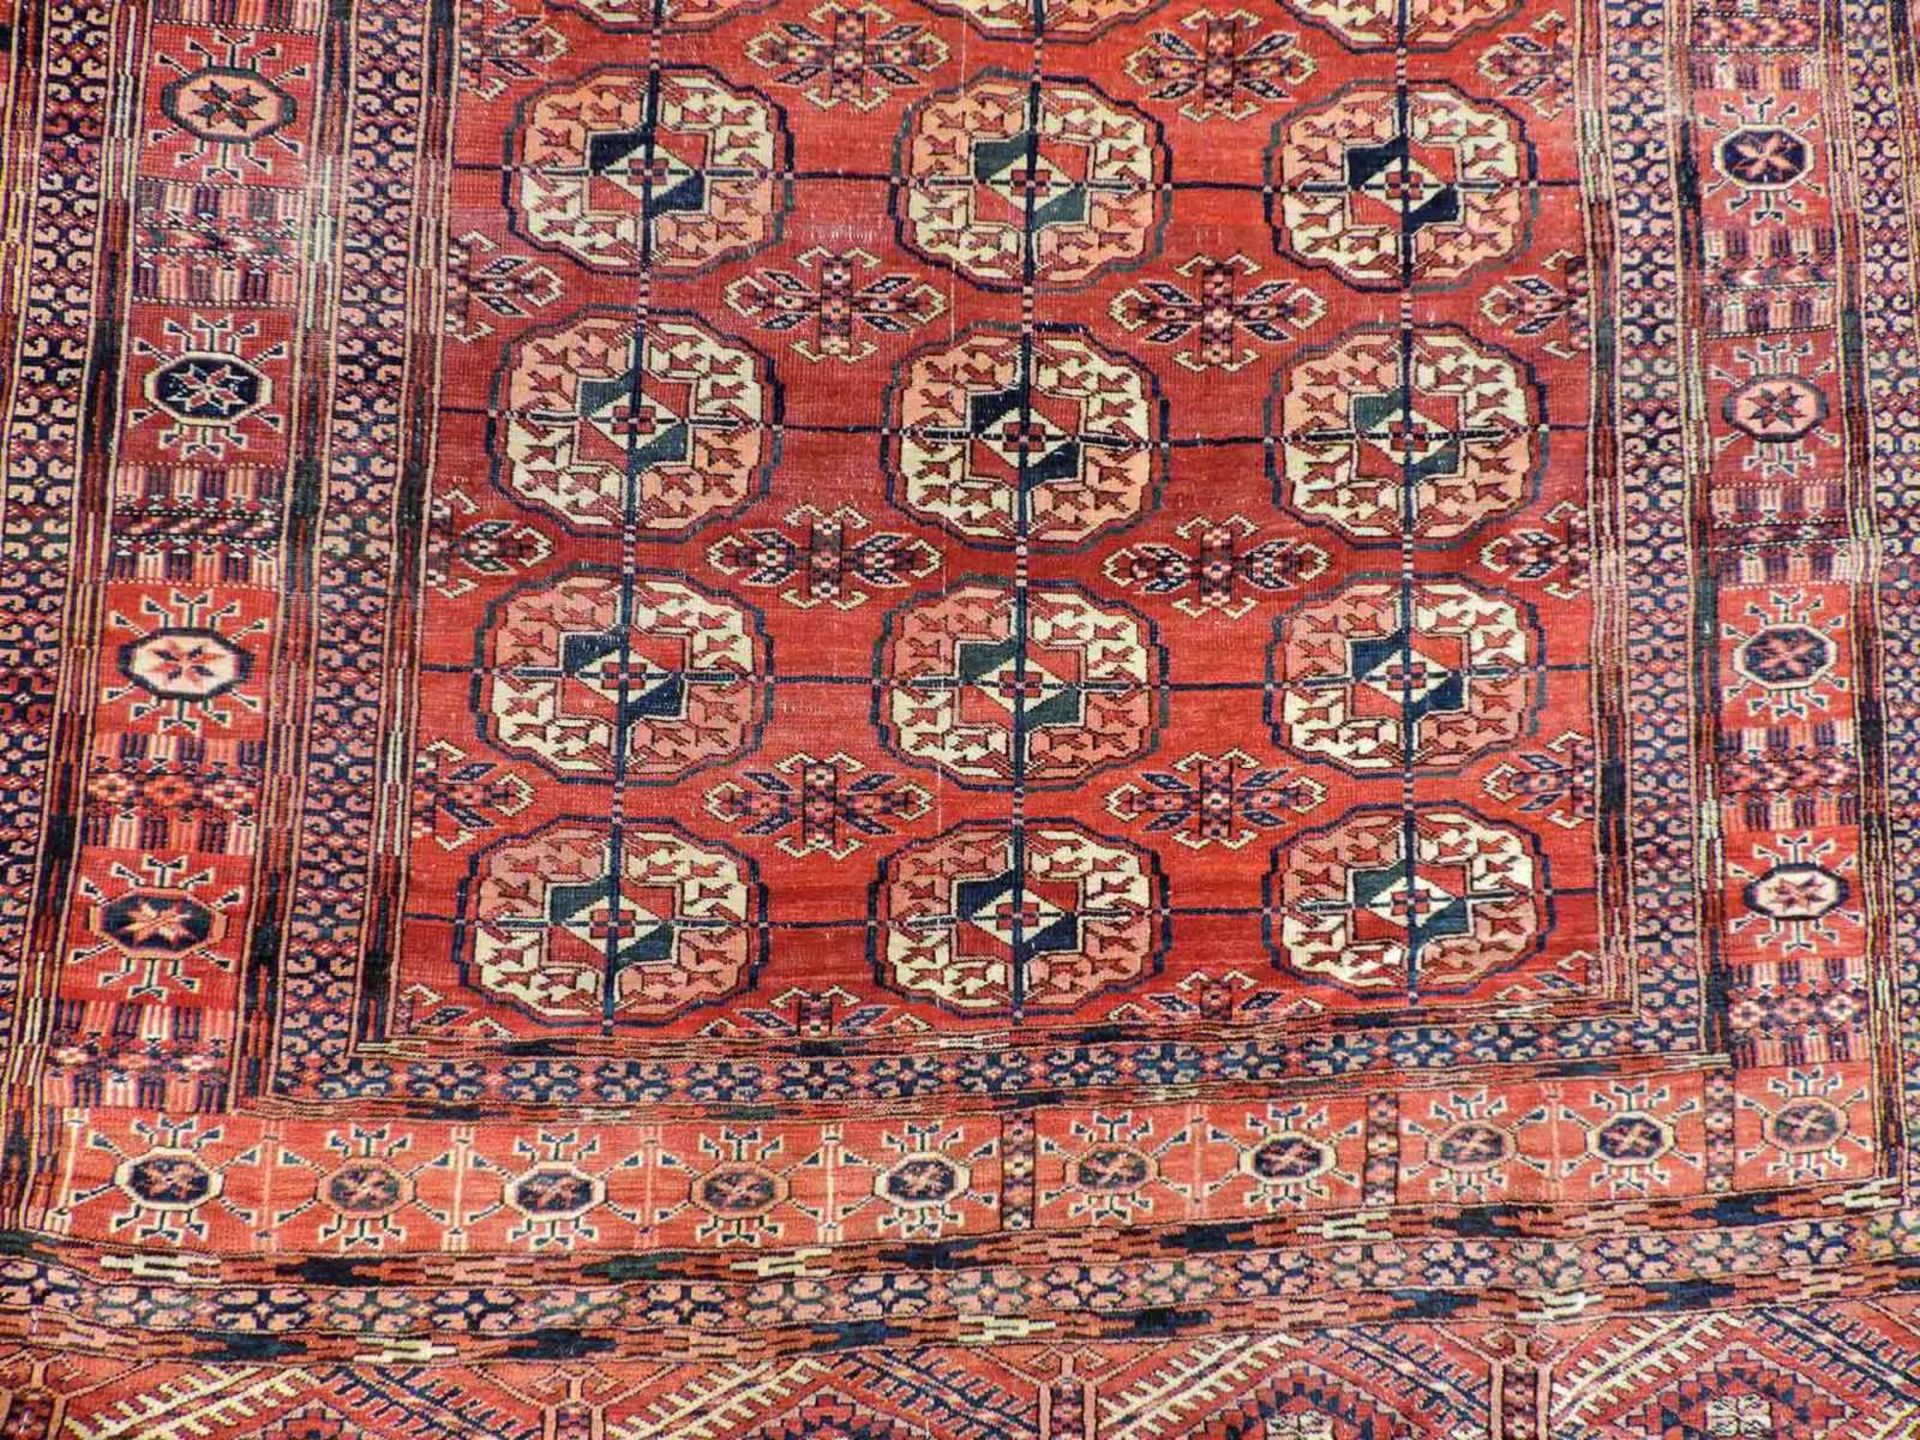 Tekke Stammesteppich. Turkmenistan, antik, um 1900. 173 cm x 130 cm. Handgeknüpft. Wolle auf - Bild 9 aus 10